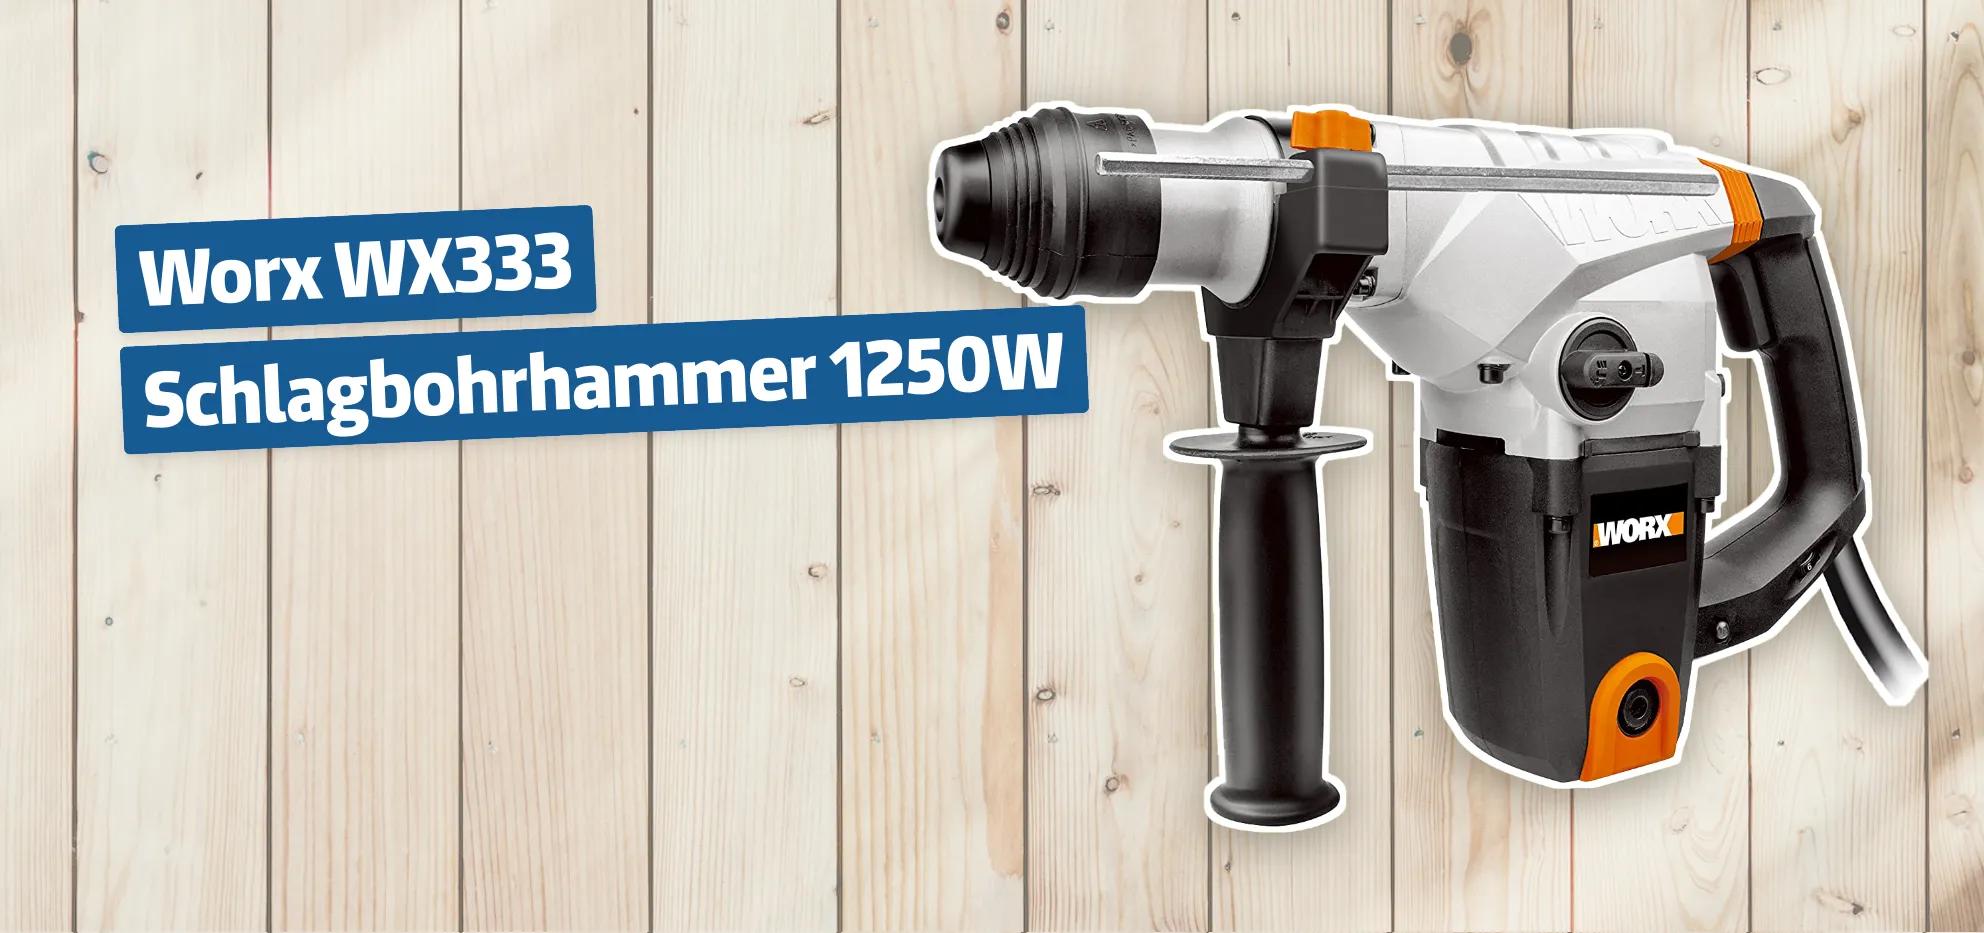 Worx WX333 Schlagbohrhammer 1250W